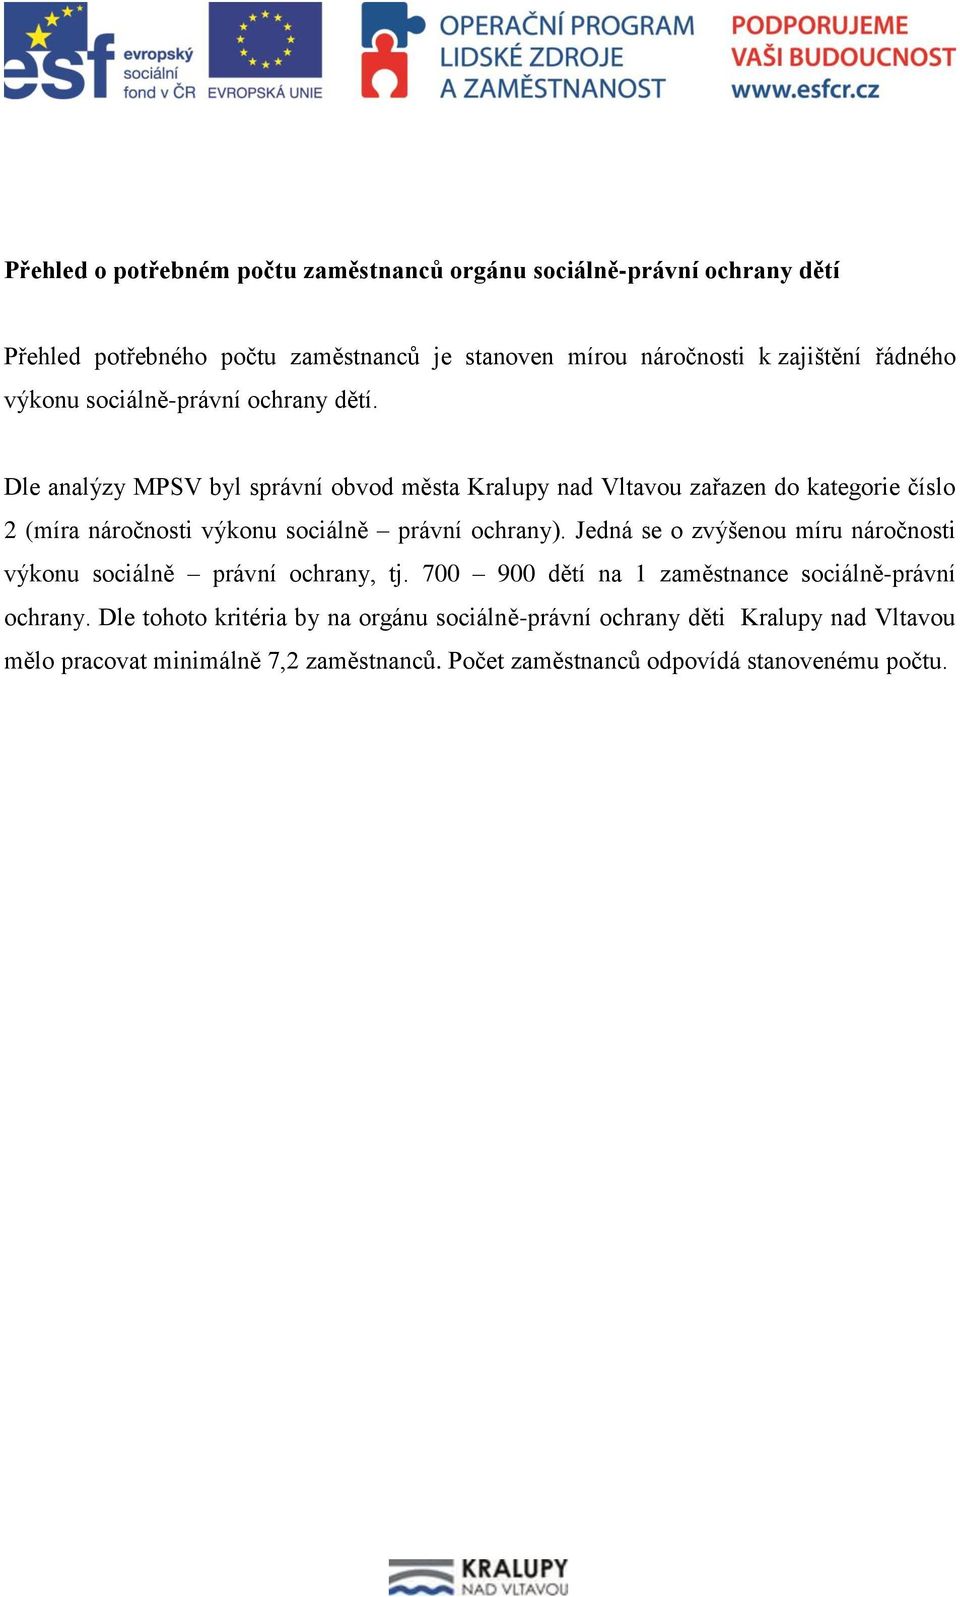 Dle analýzy MPSV byl správní obvod města Kralupy nad Vltavou zařazen do kategorie číslo 2 (míra náročnosti výkonu sociálně právní ochrany).